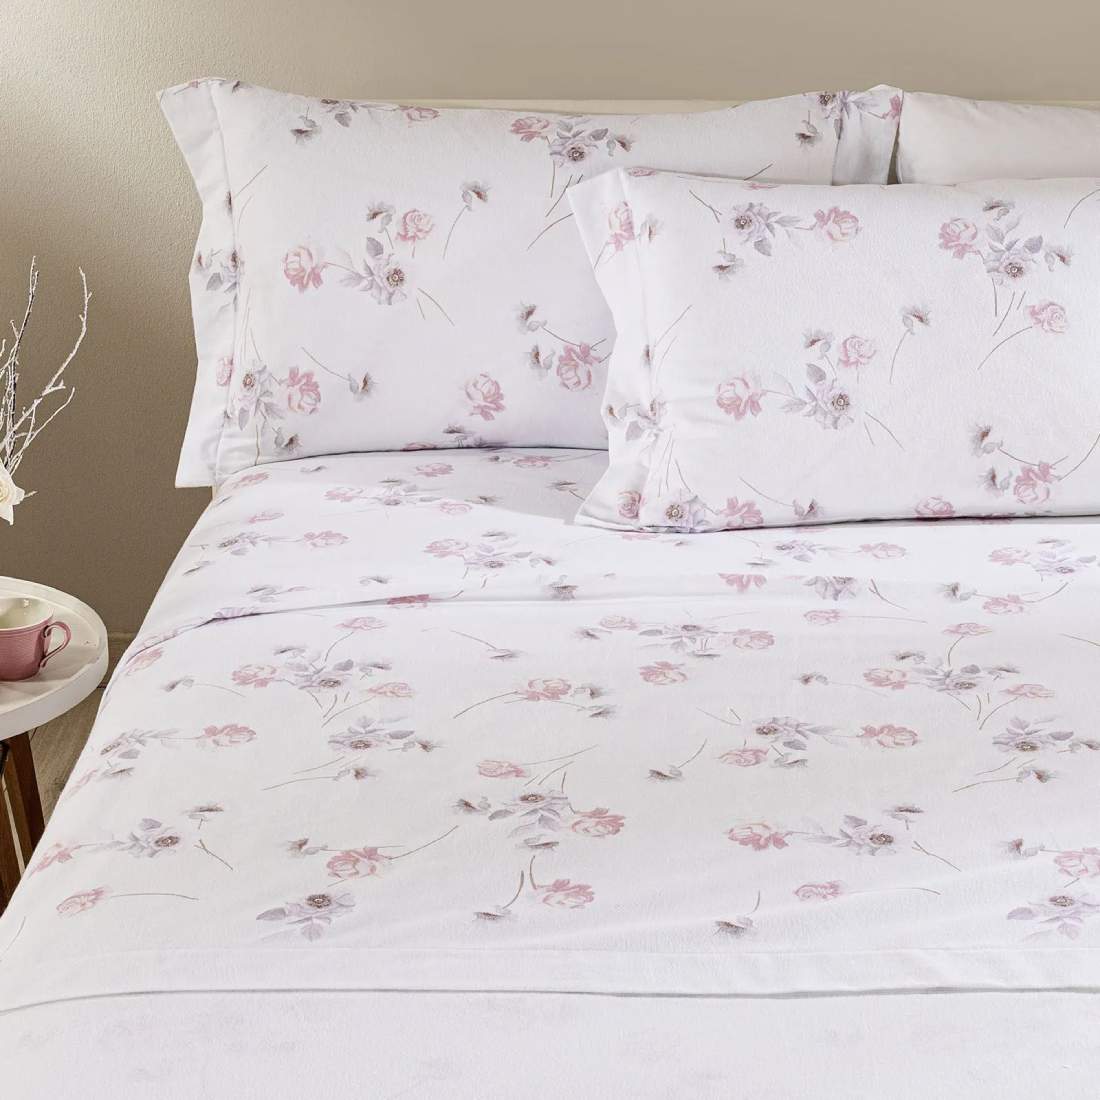 Completo lenzuola Caleffi Flores, in flanella di puro cotone. Fantasia con fiori rosa su fondo chiaro.  Disponibile nella misura per letto singolo, piazza e mezza e matrimoniale maxi.